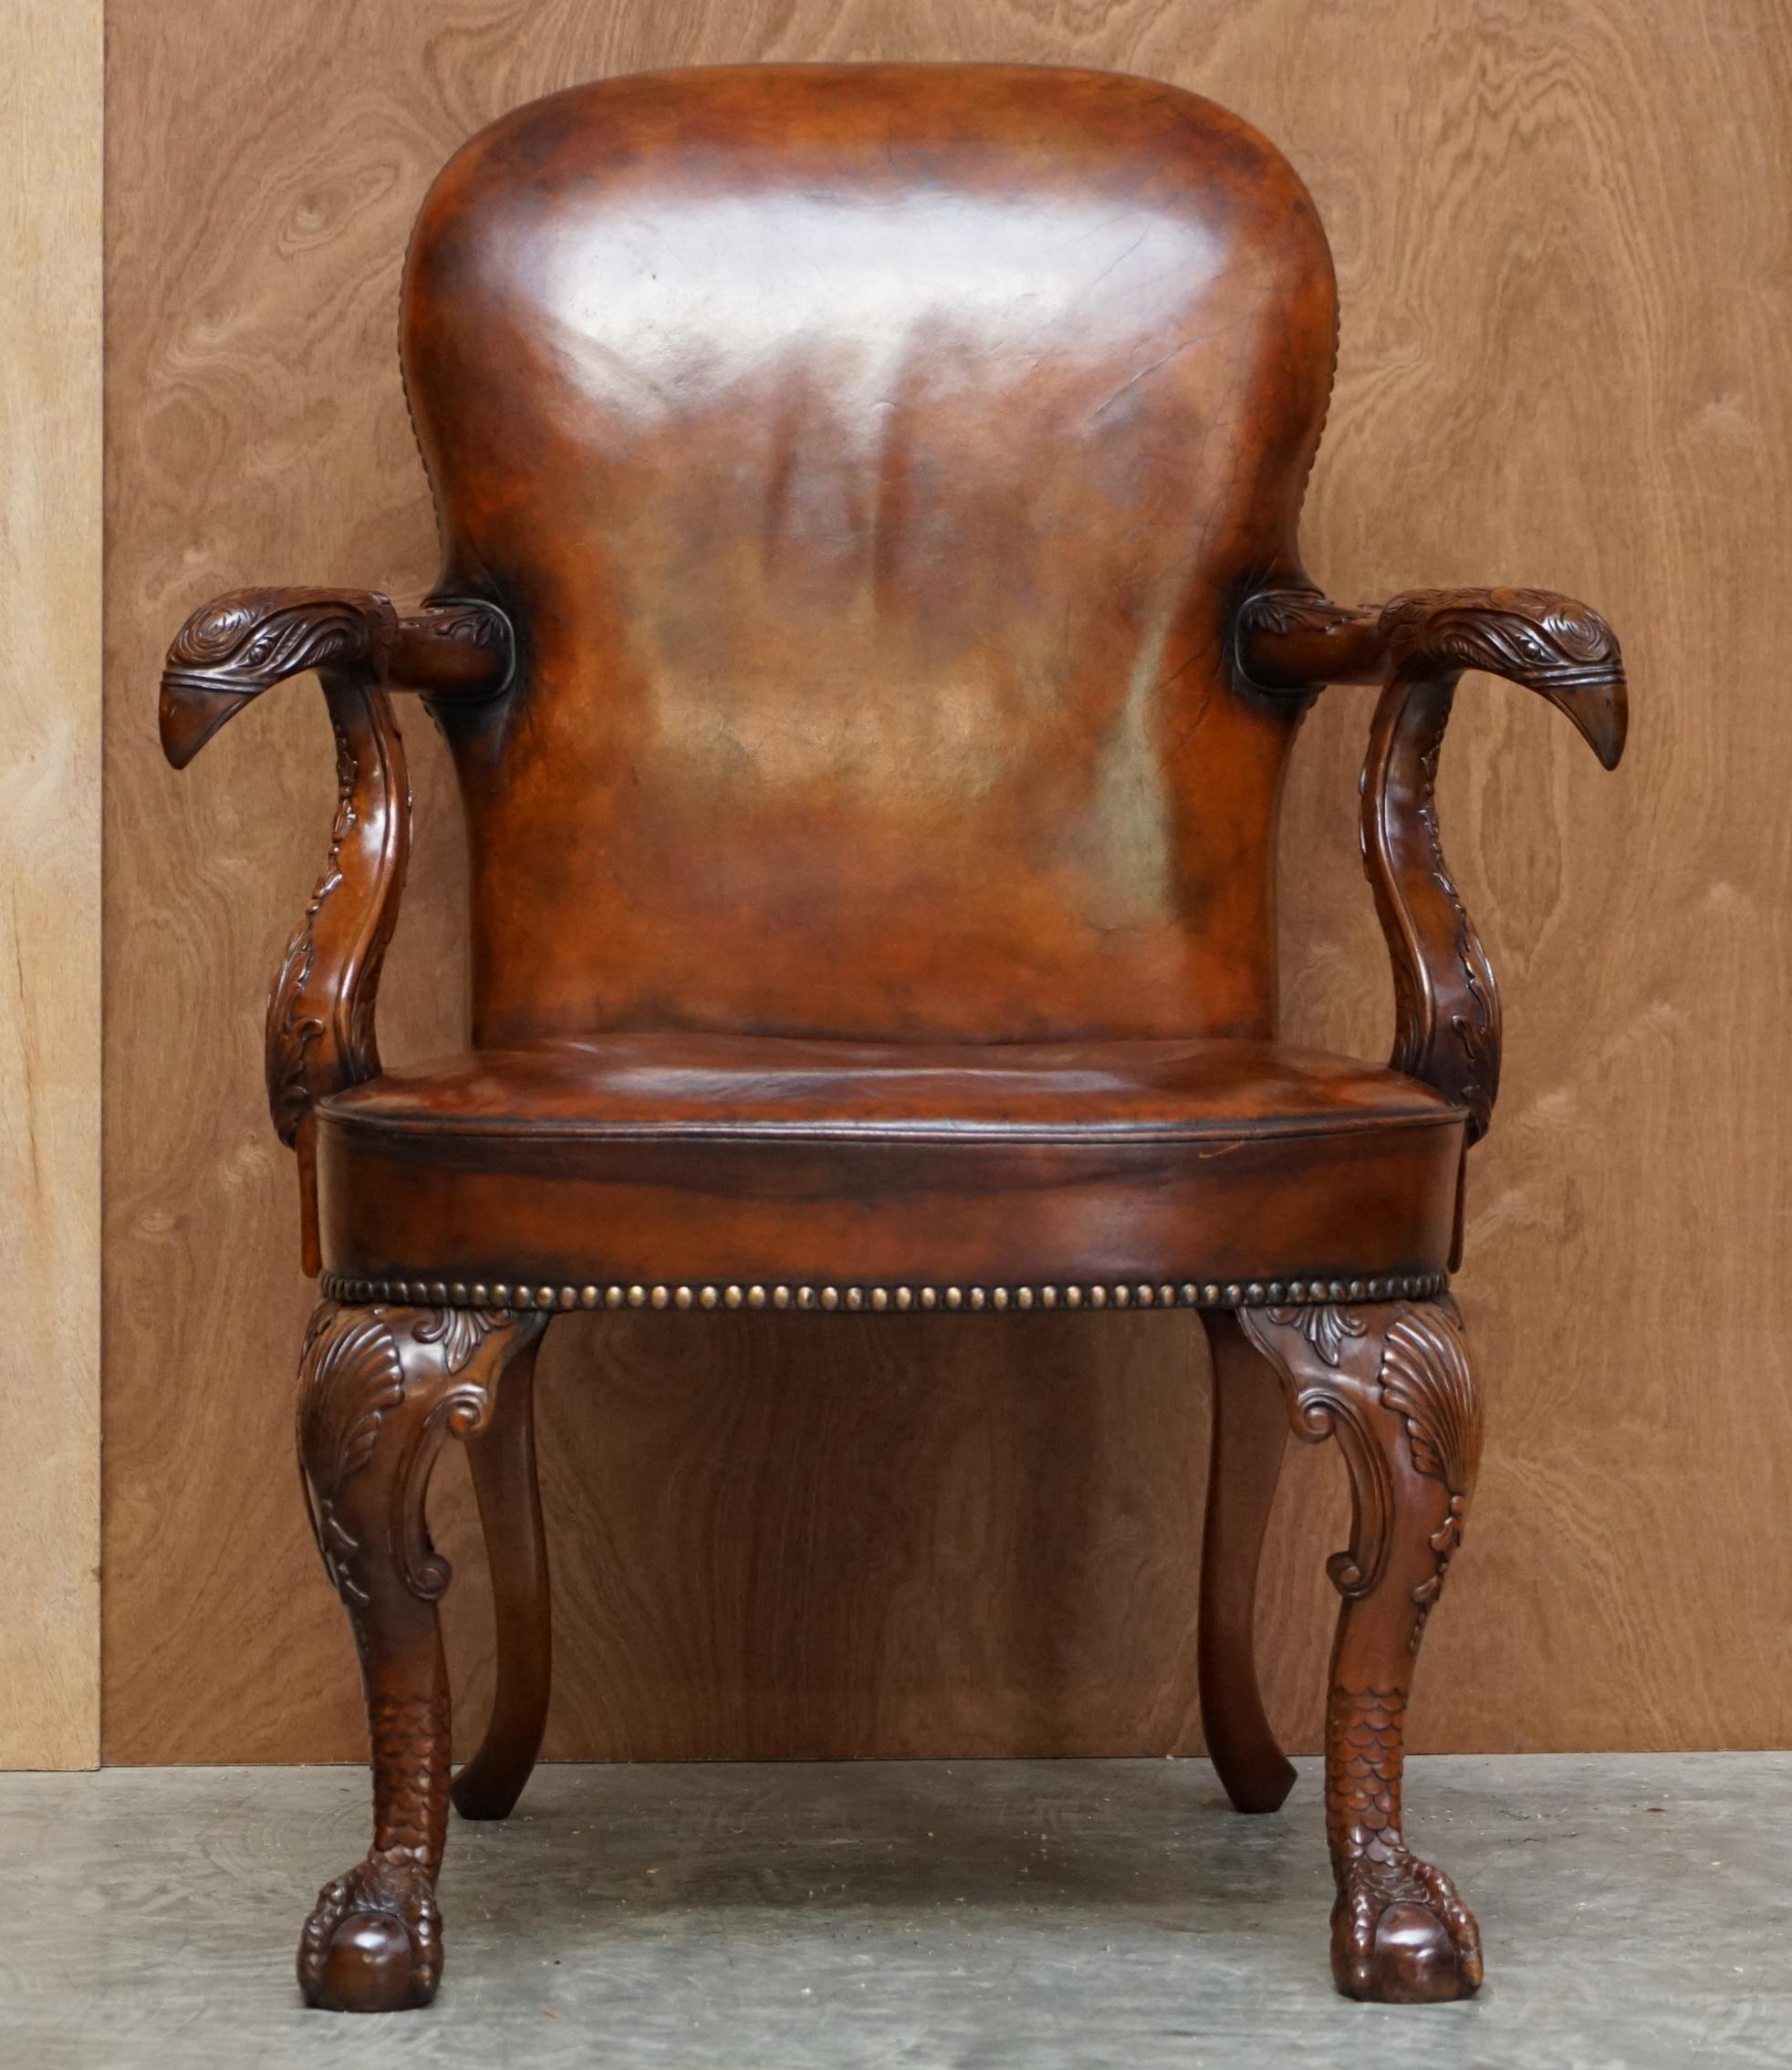 Wir freuen uns, für diese schöne Hand geschnitzt georgianischen Stil Adlerkopf und Klaue & Ball Füße Sessel bieten 

Ein sehr gut aussehendes und gut gemachtes Stück. Es basiert auf einem georgianischen irischen Entwurf aus dem 18. Jahrhundert. Es